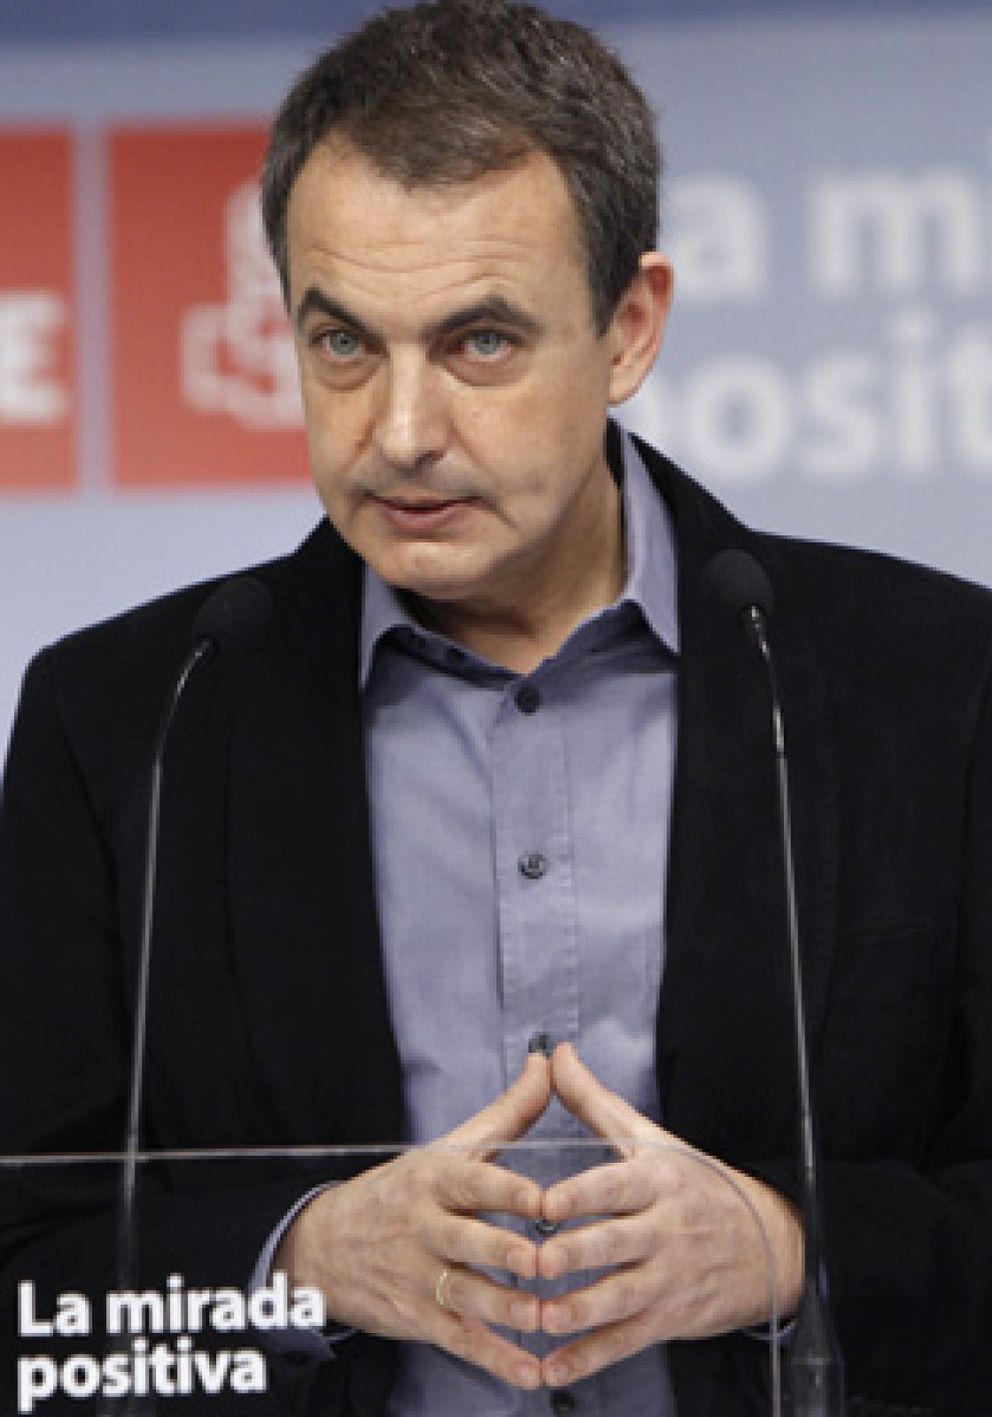 Foto: El 80% de los lectores cree que la caída de la bolsa le costará la Moncloa a Zapatero